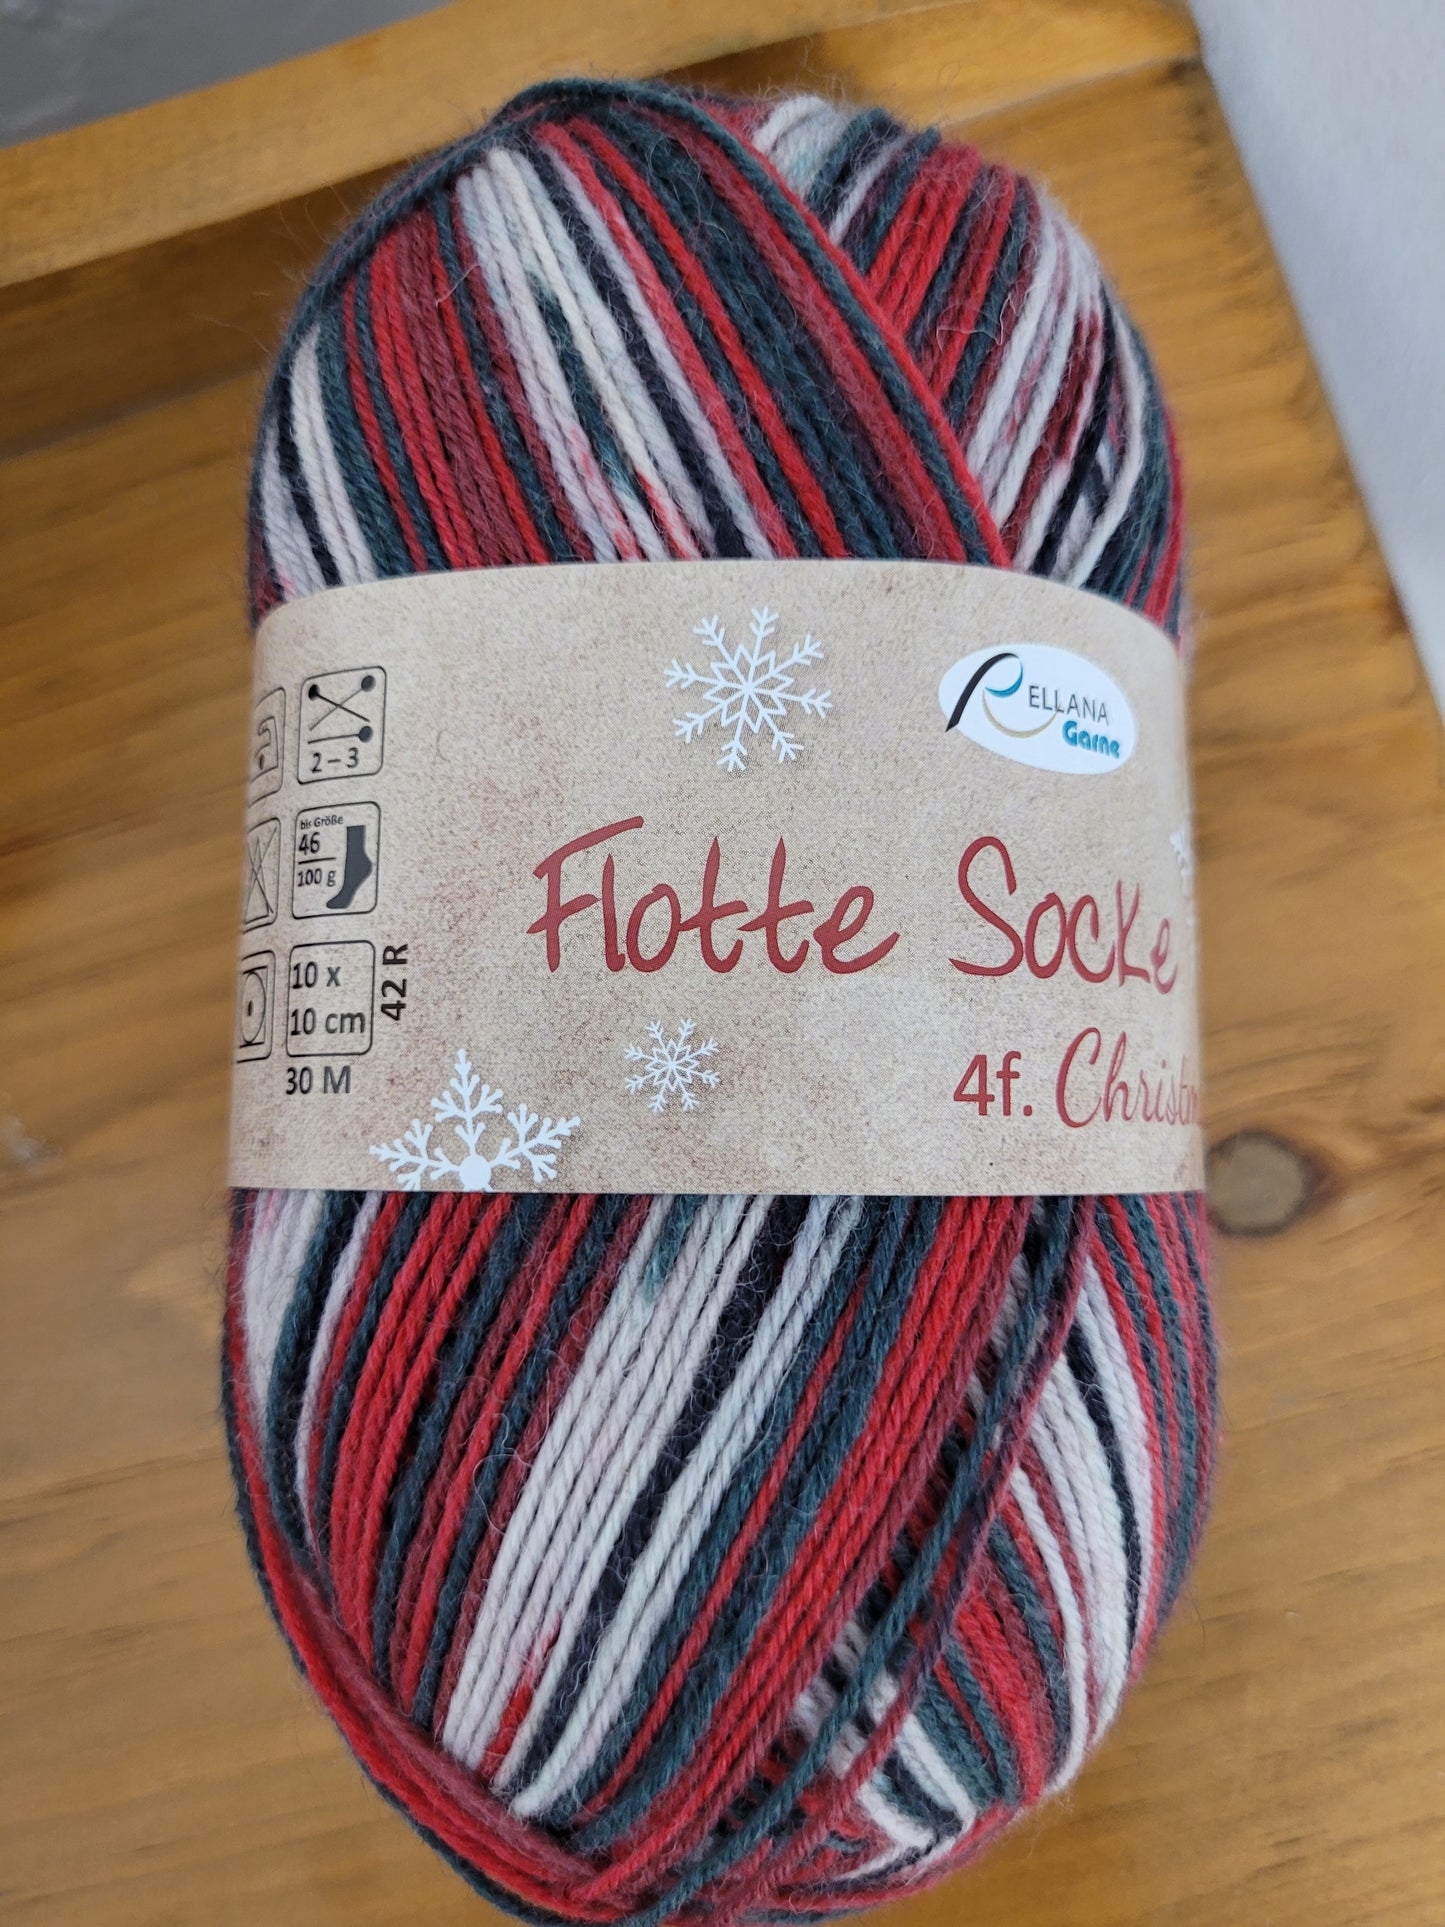 RELLANA Garne - Flotte Socke Christmas!